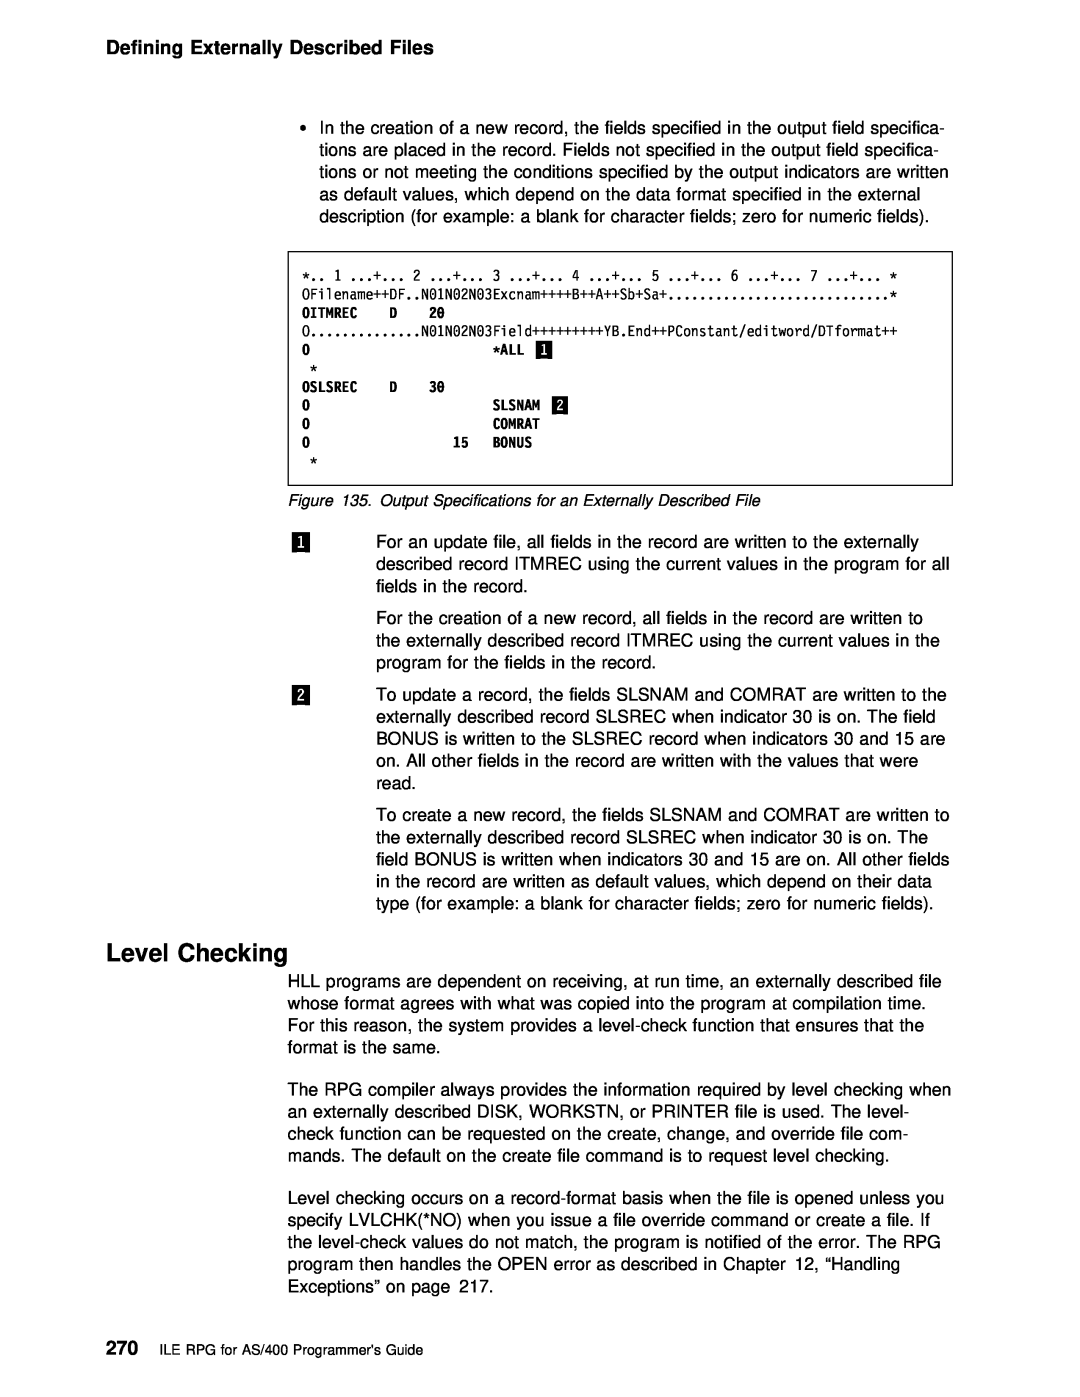 IBM AS/400 manual Level Checking, Defining Externally Described Files, Oslsrec 